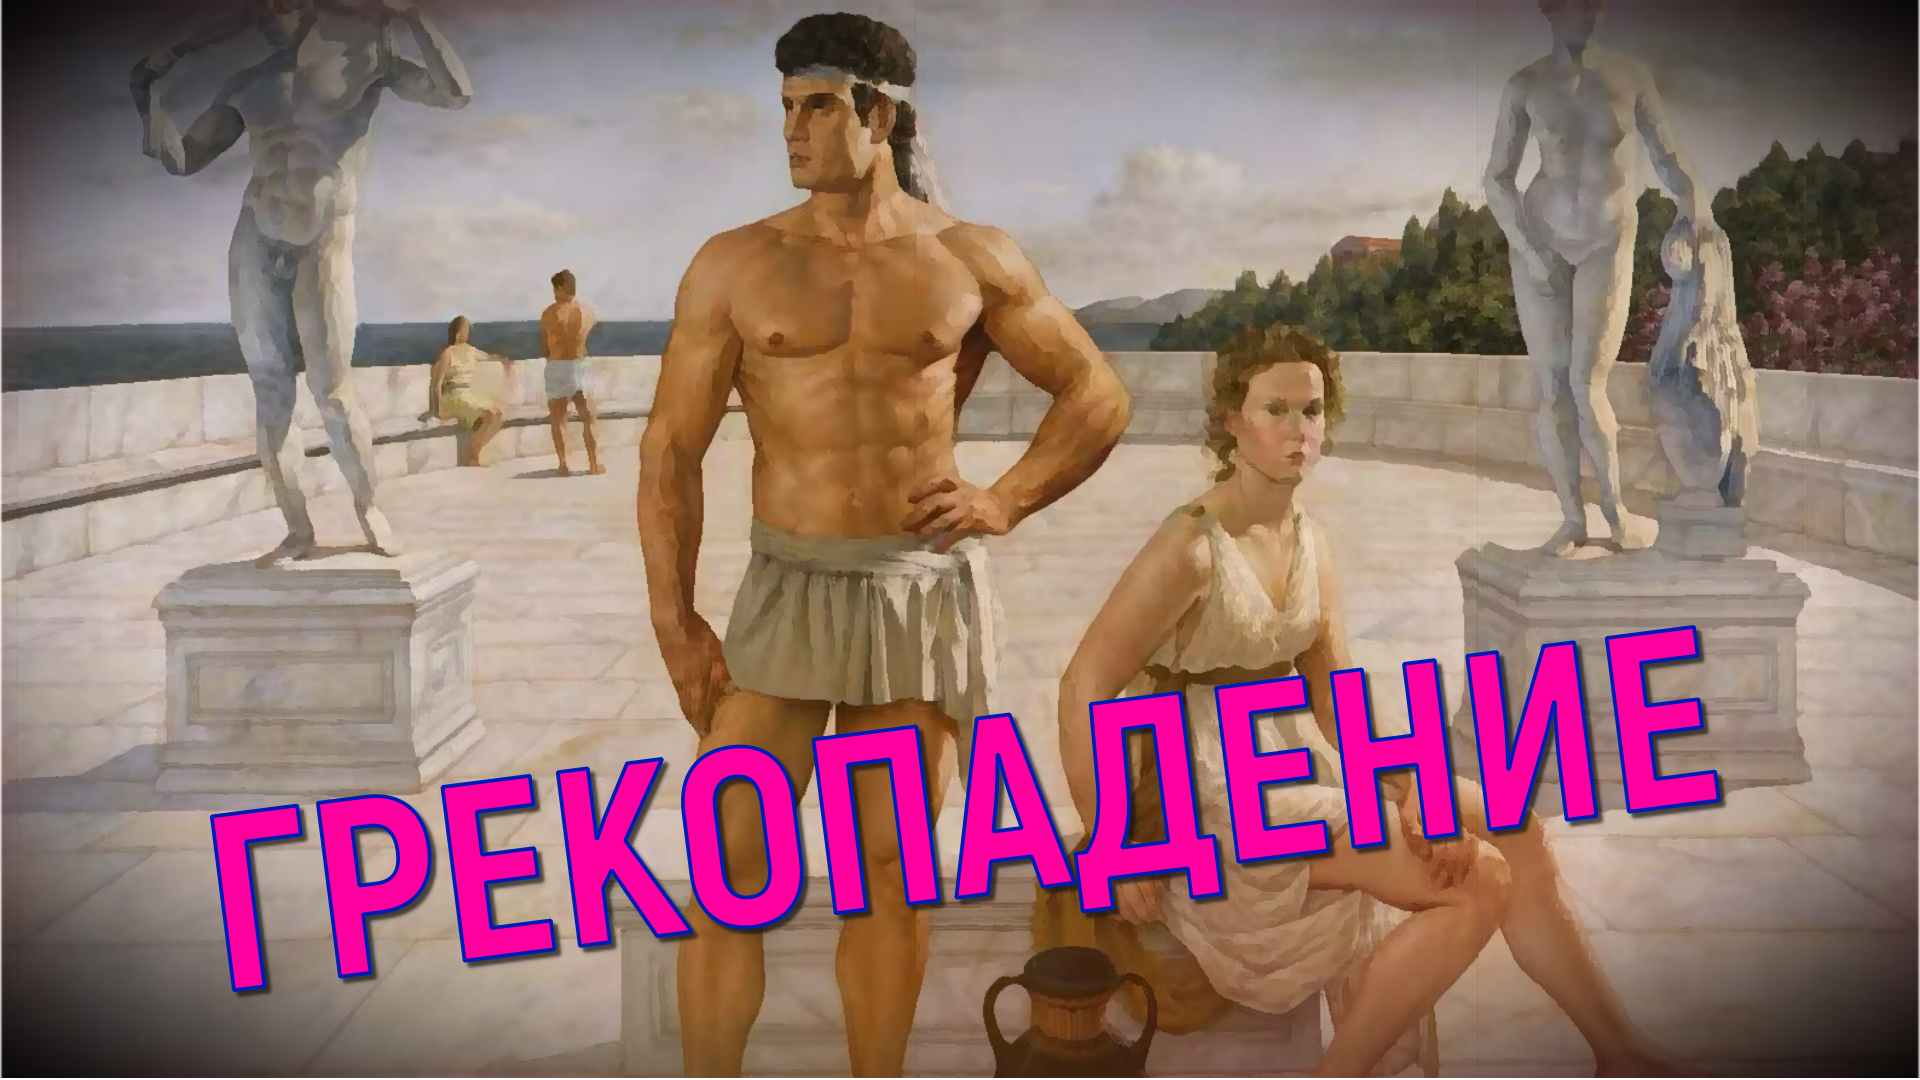 "Модный аксессуар!" Историческое решение парламента Греции - отмена традиционных ценностей